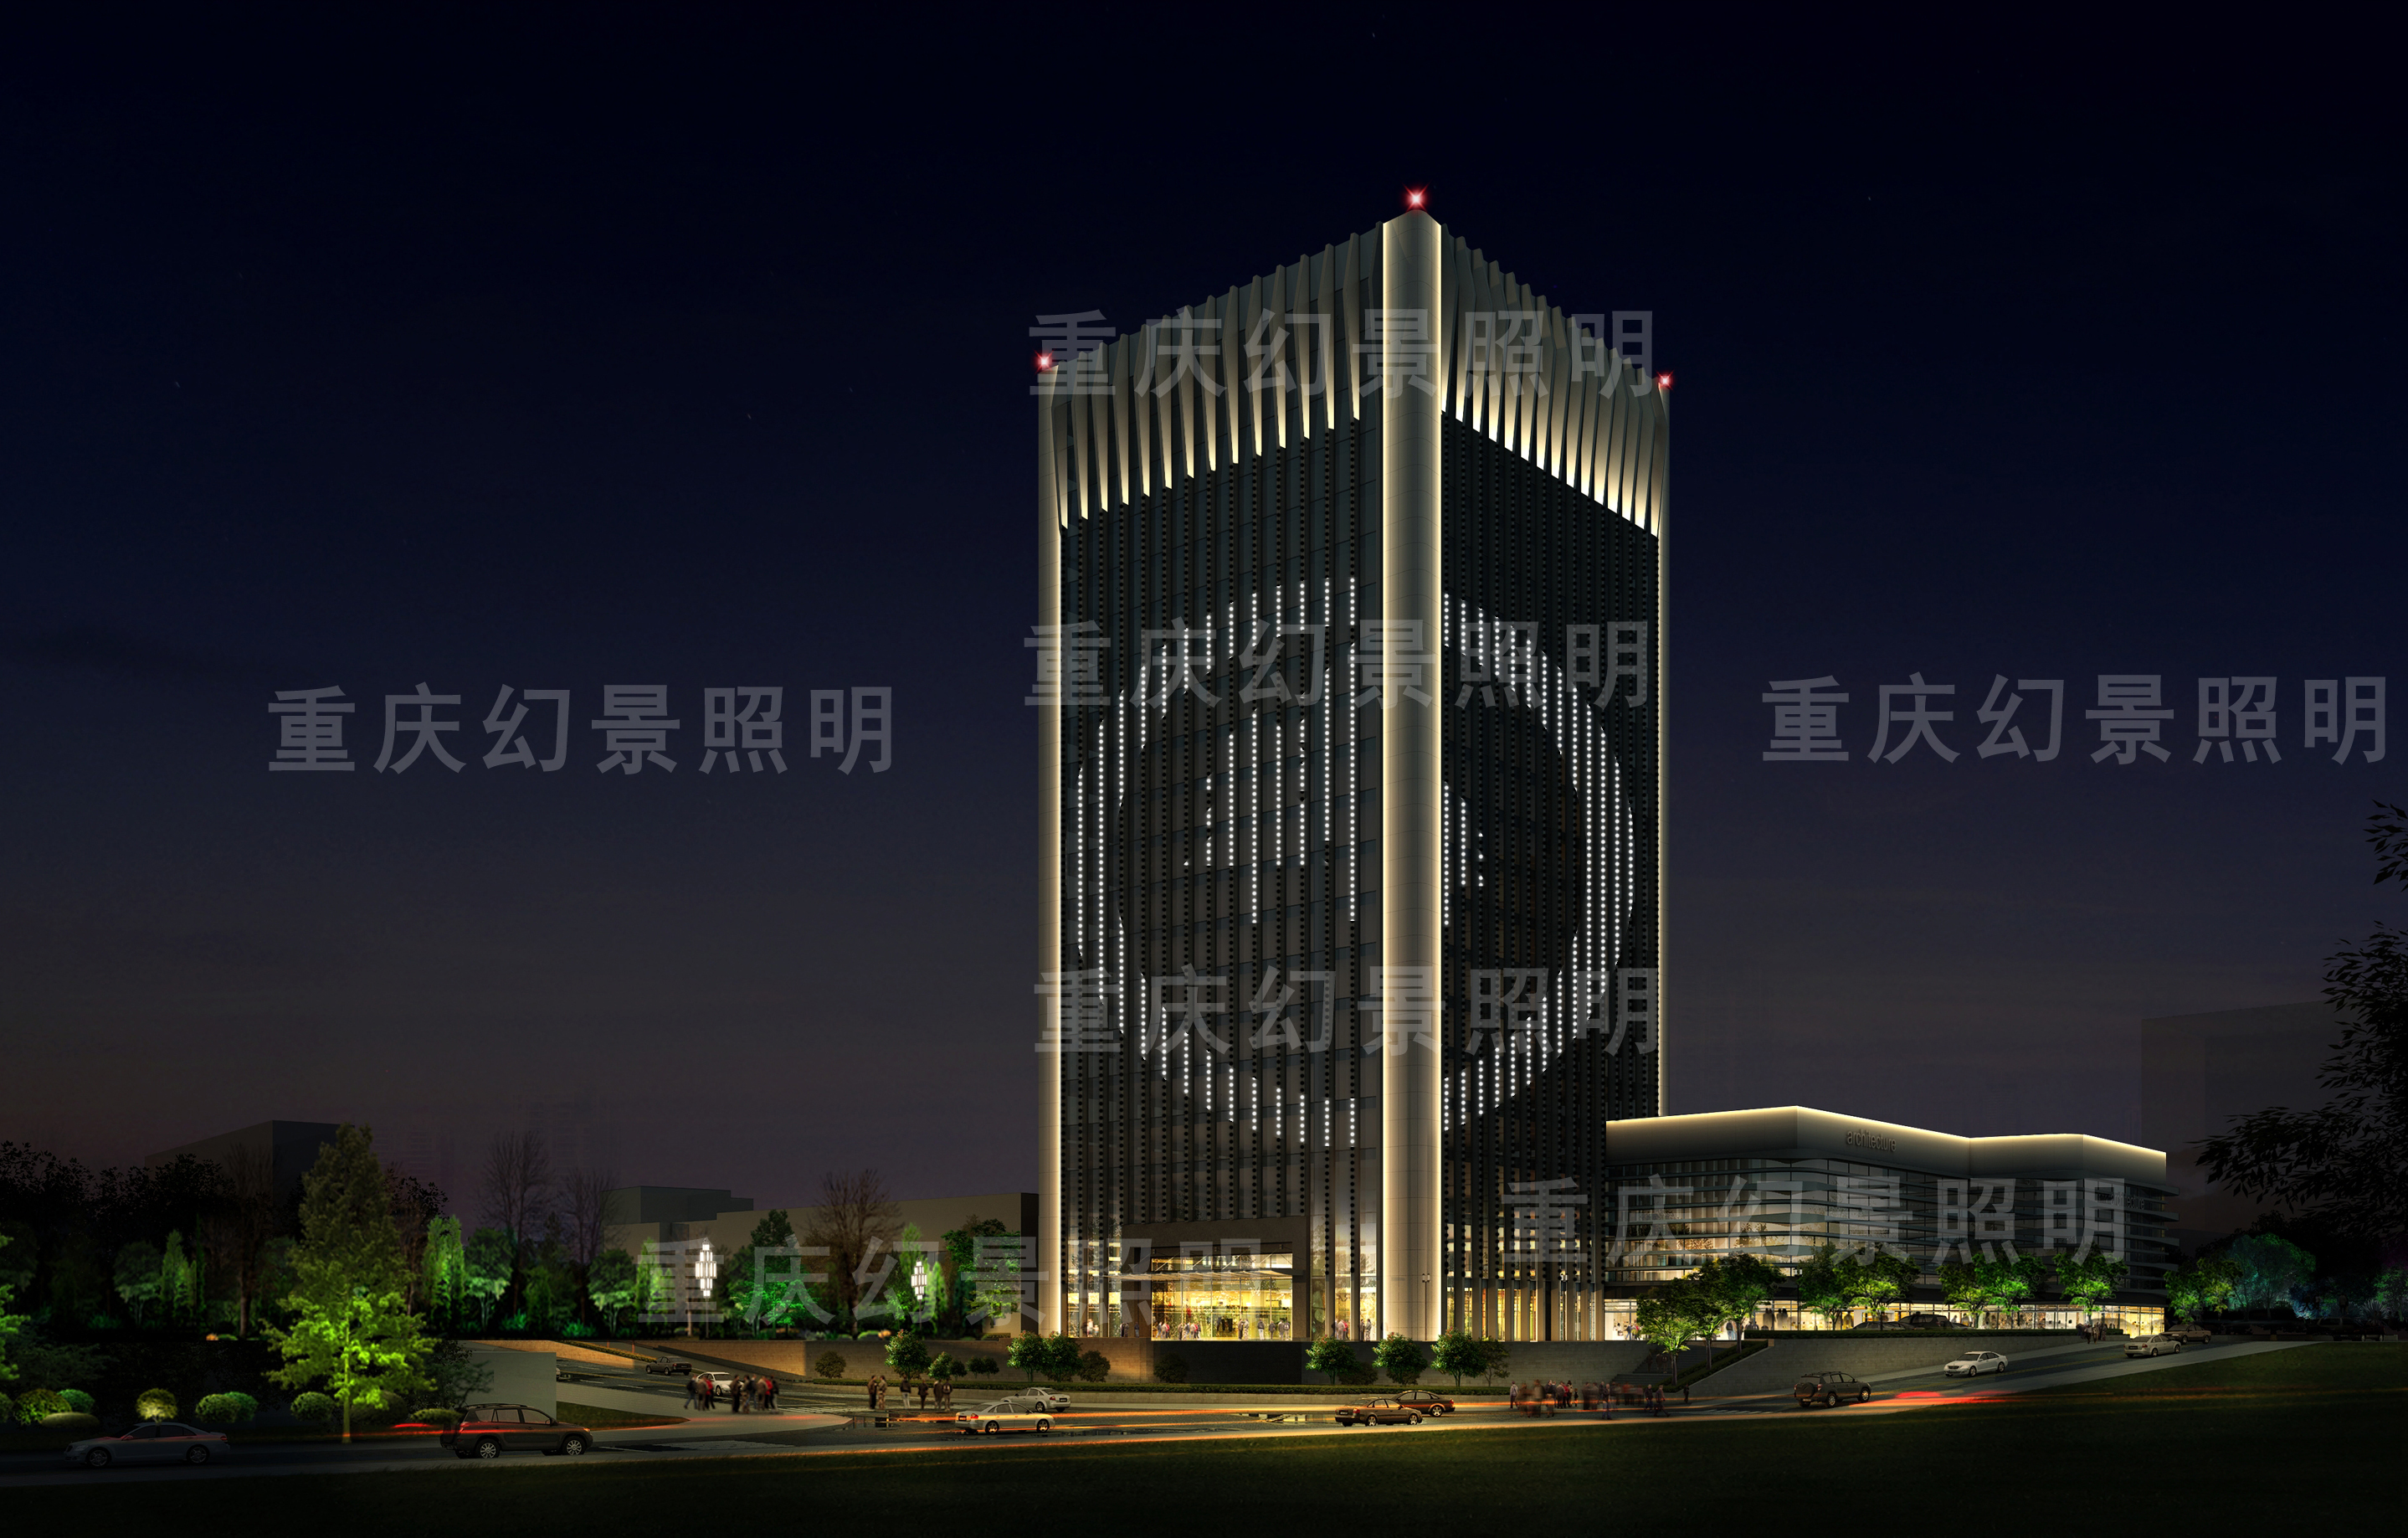  重庆幻景照明设计有限公司